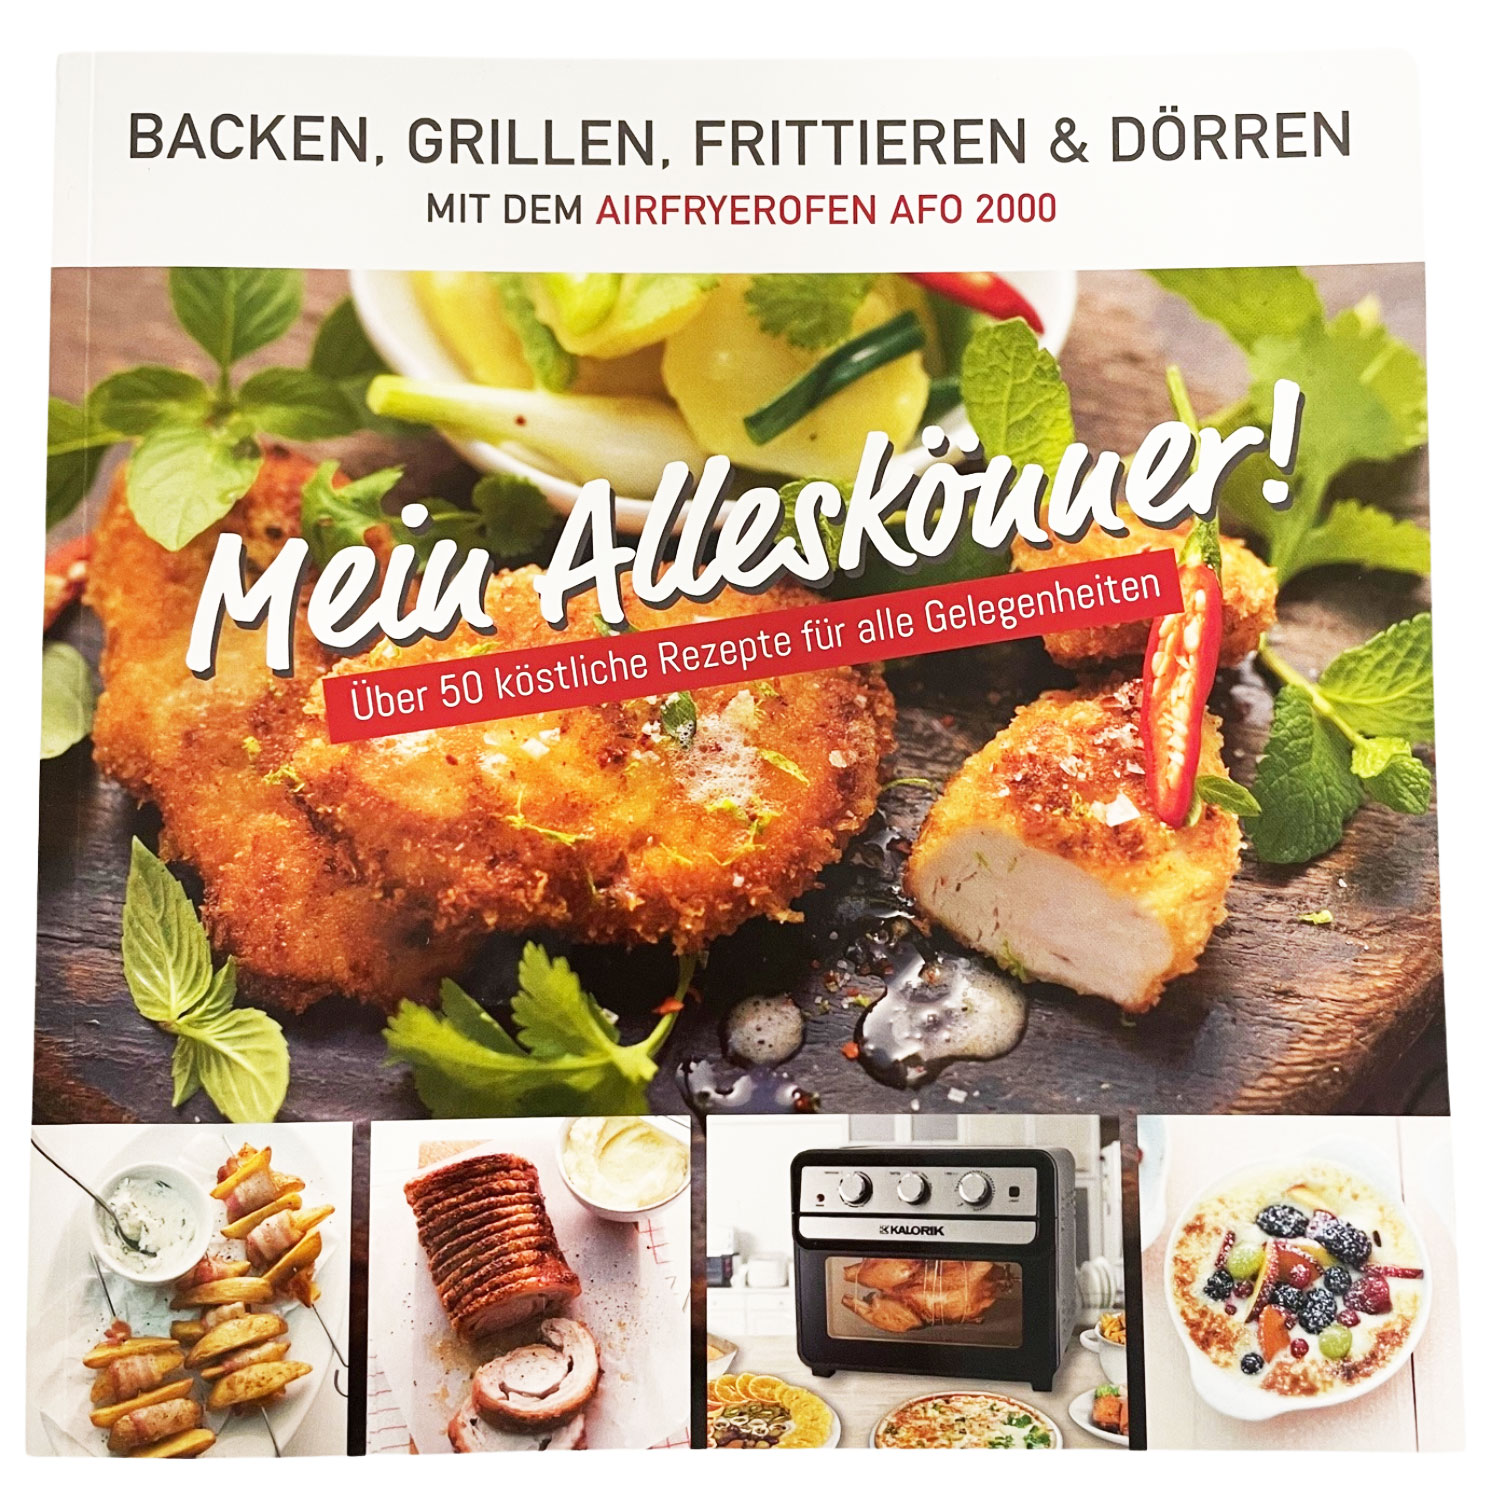 Rezeptbuch "Mein Alleskönner!" für TKG AFO 2000